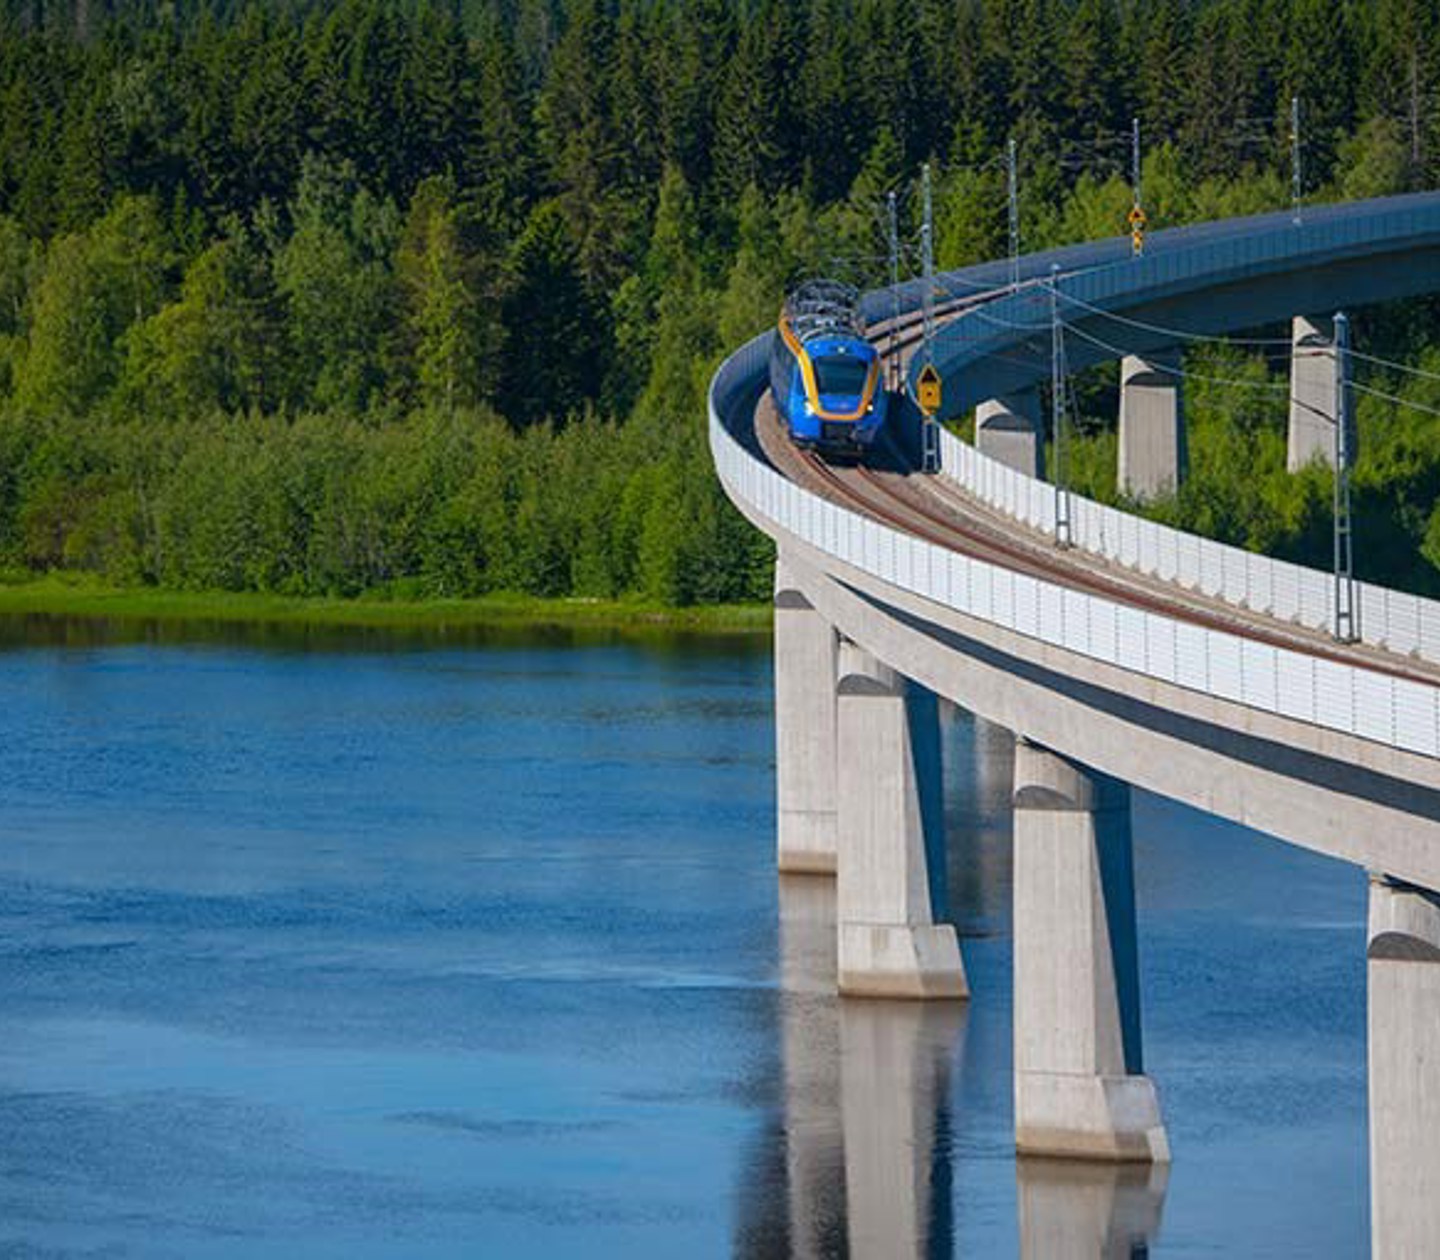 Tåg som åker på bro över vattnet